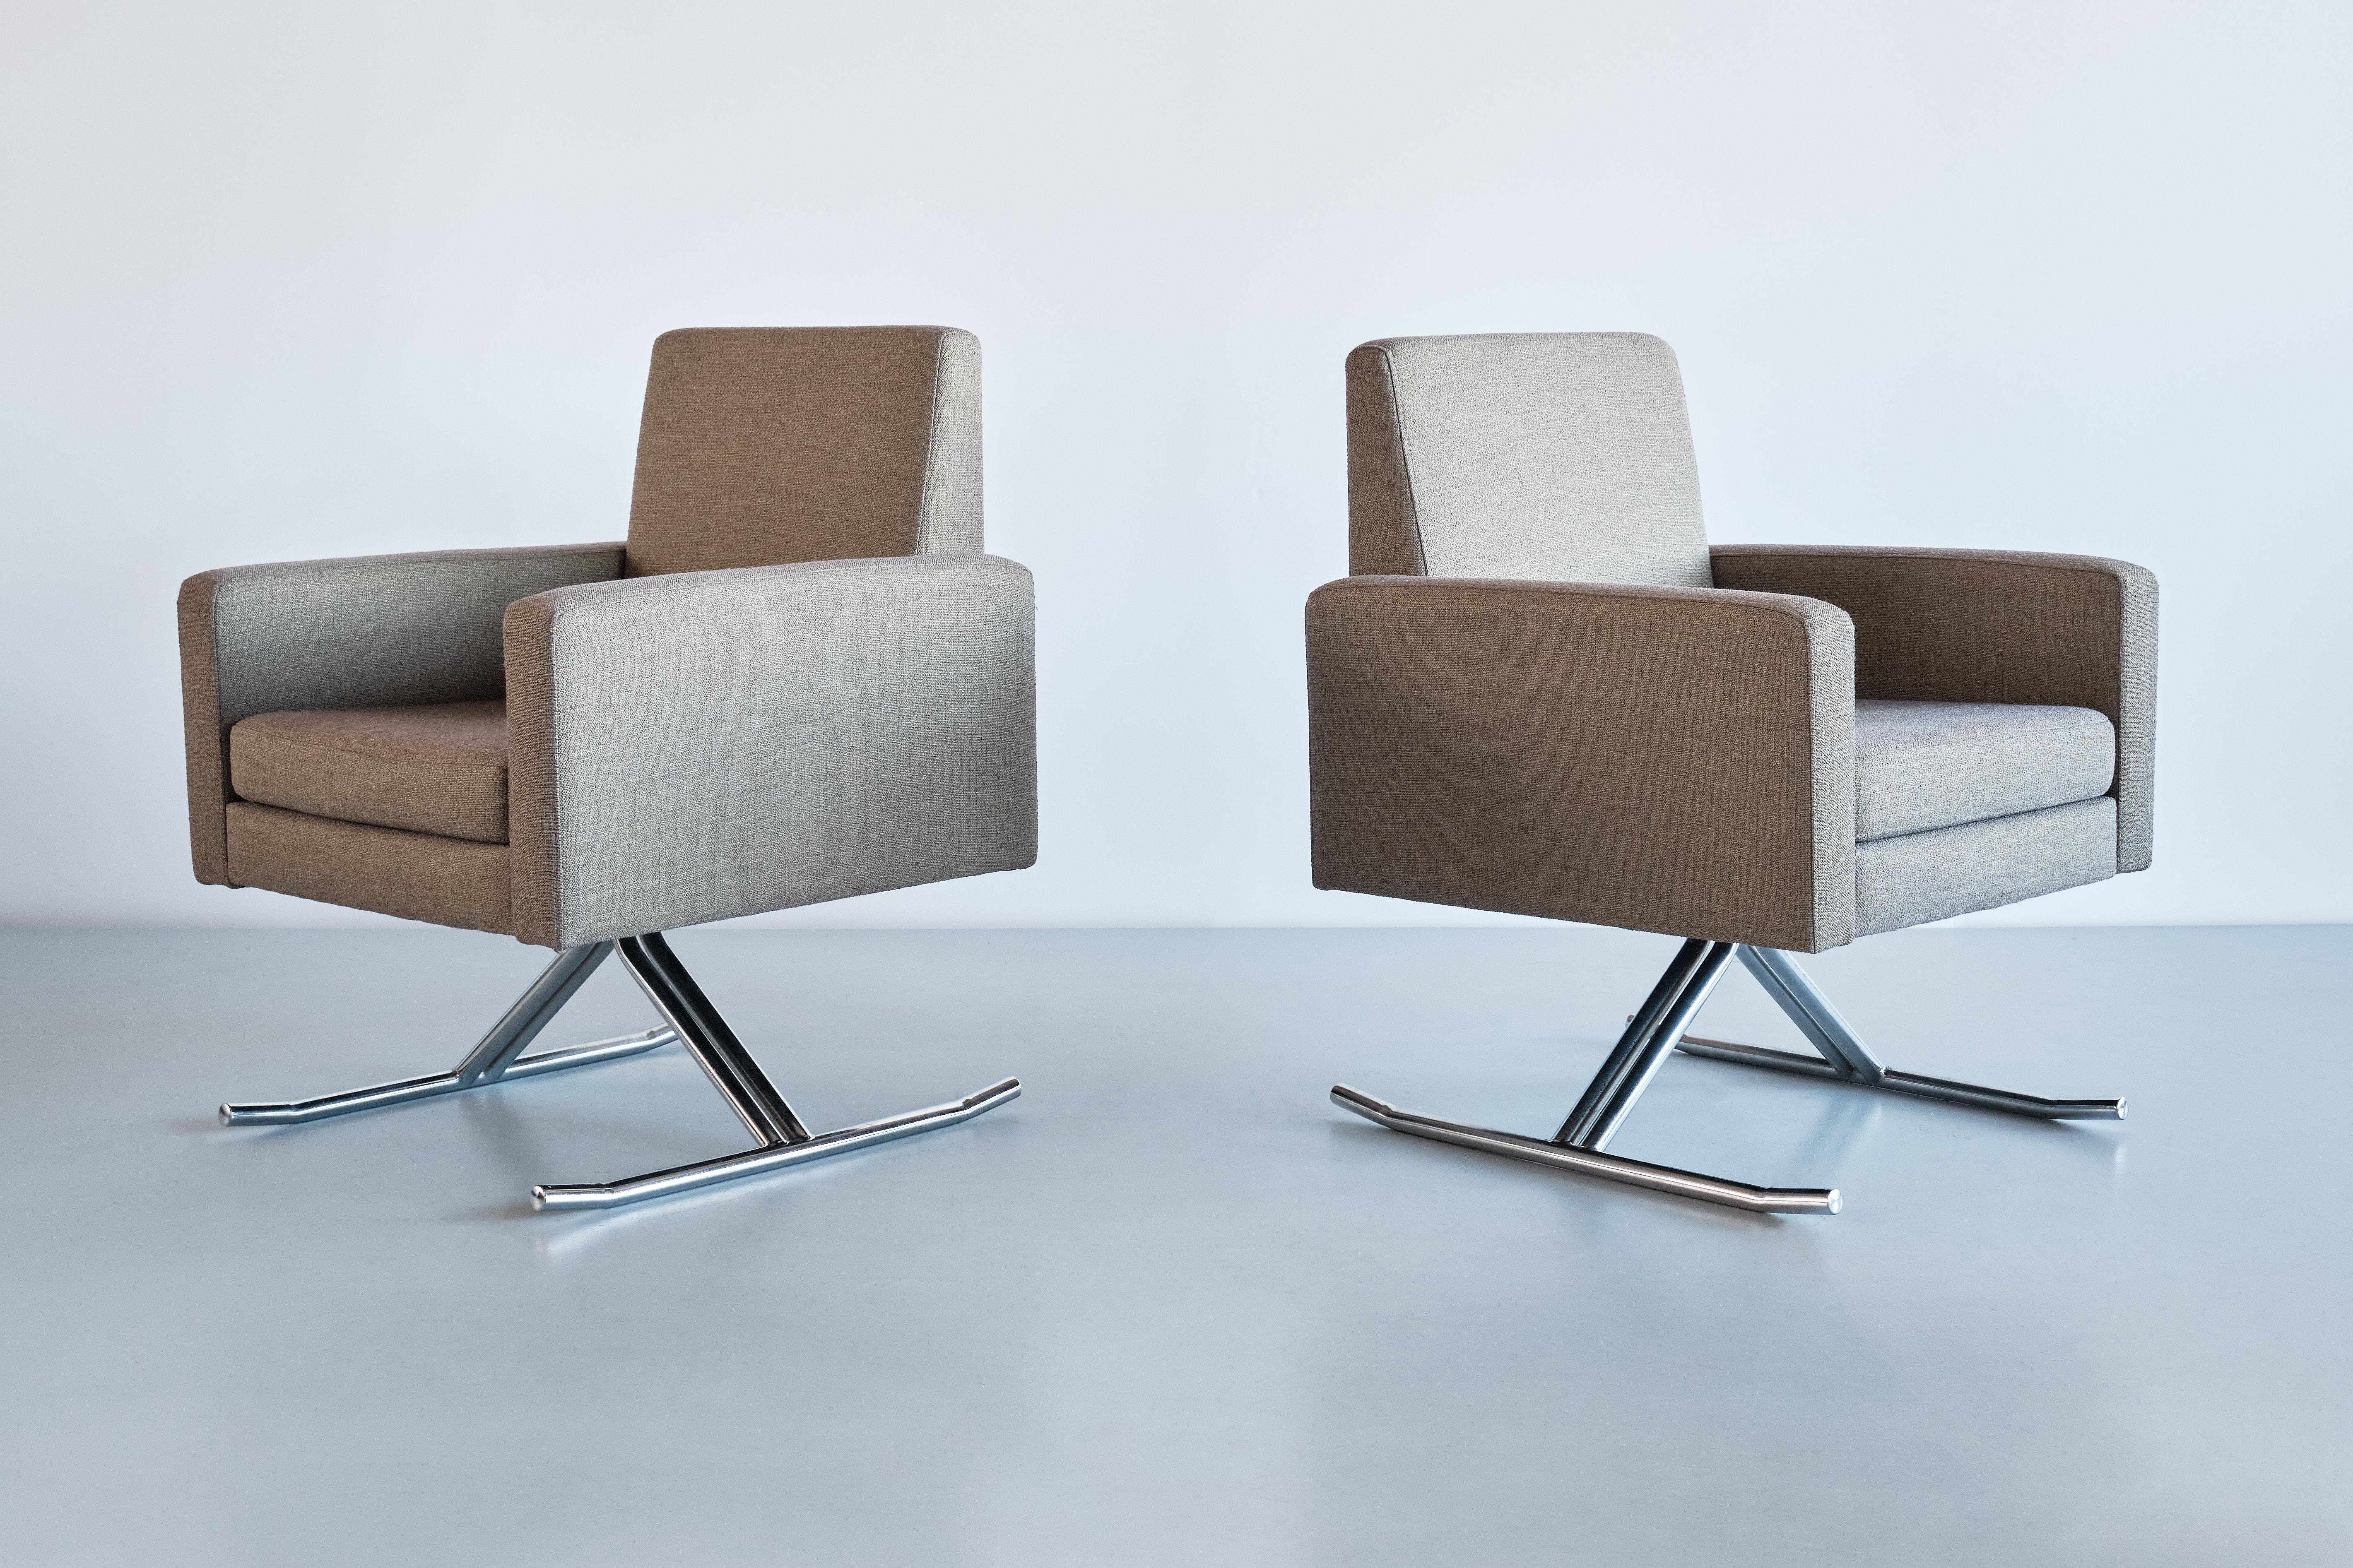 Dieses außergewöhnlich seltene Sesselpaar wurde von Joseph-André Motte entworfen und Ende der 1960er Jahre von der Edition MPS in Frankreich hergestellt. Das Modell trägt den Namen 'Luge' und wurde ursprünglich von Motte für die Innenausstattung des